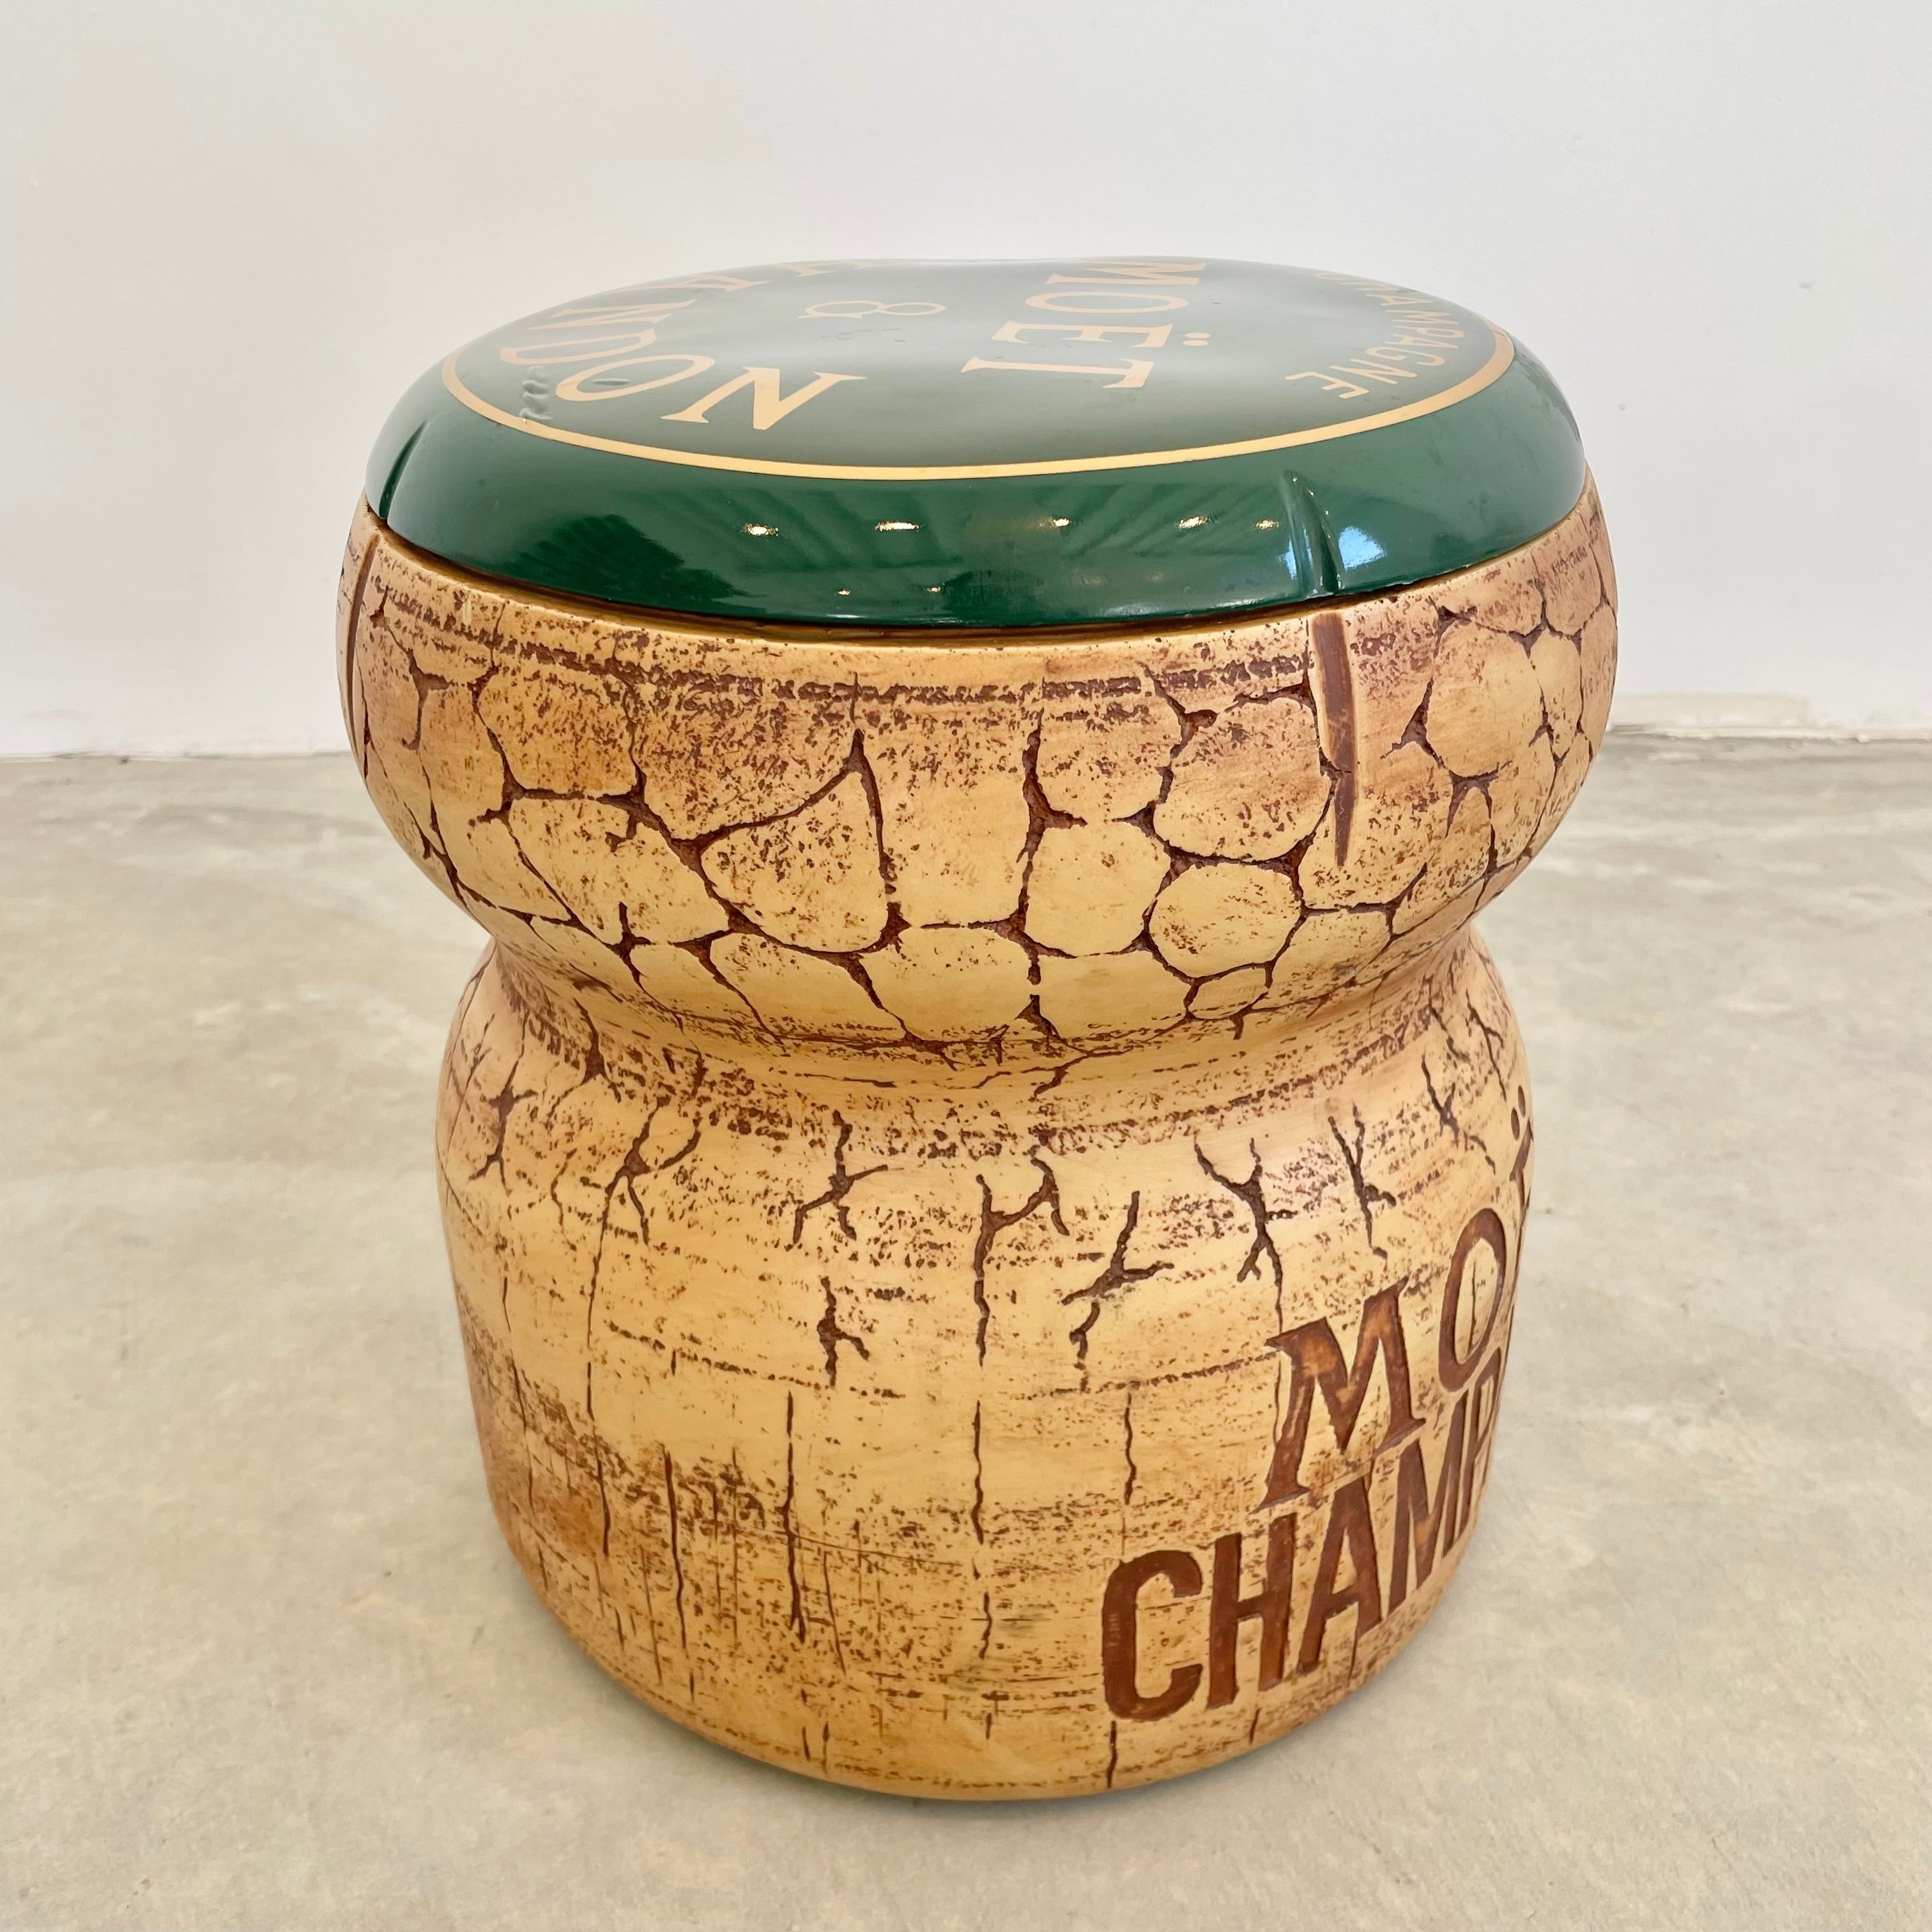 Vintage Champagne Cooler Moët & Chandon 